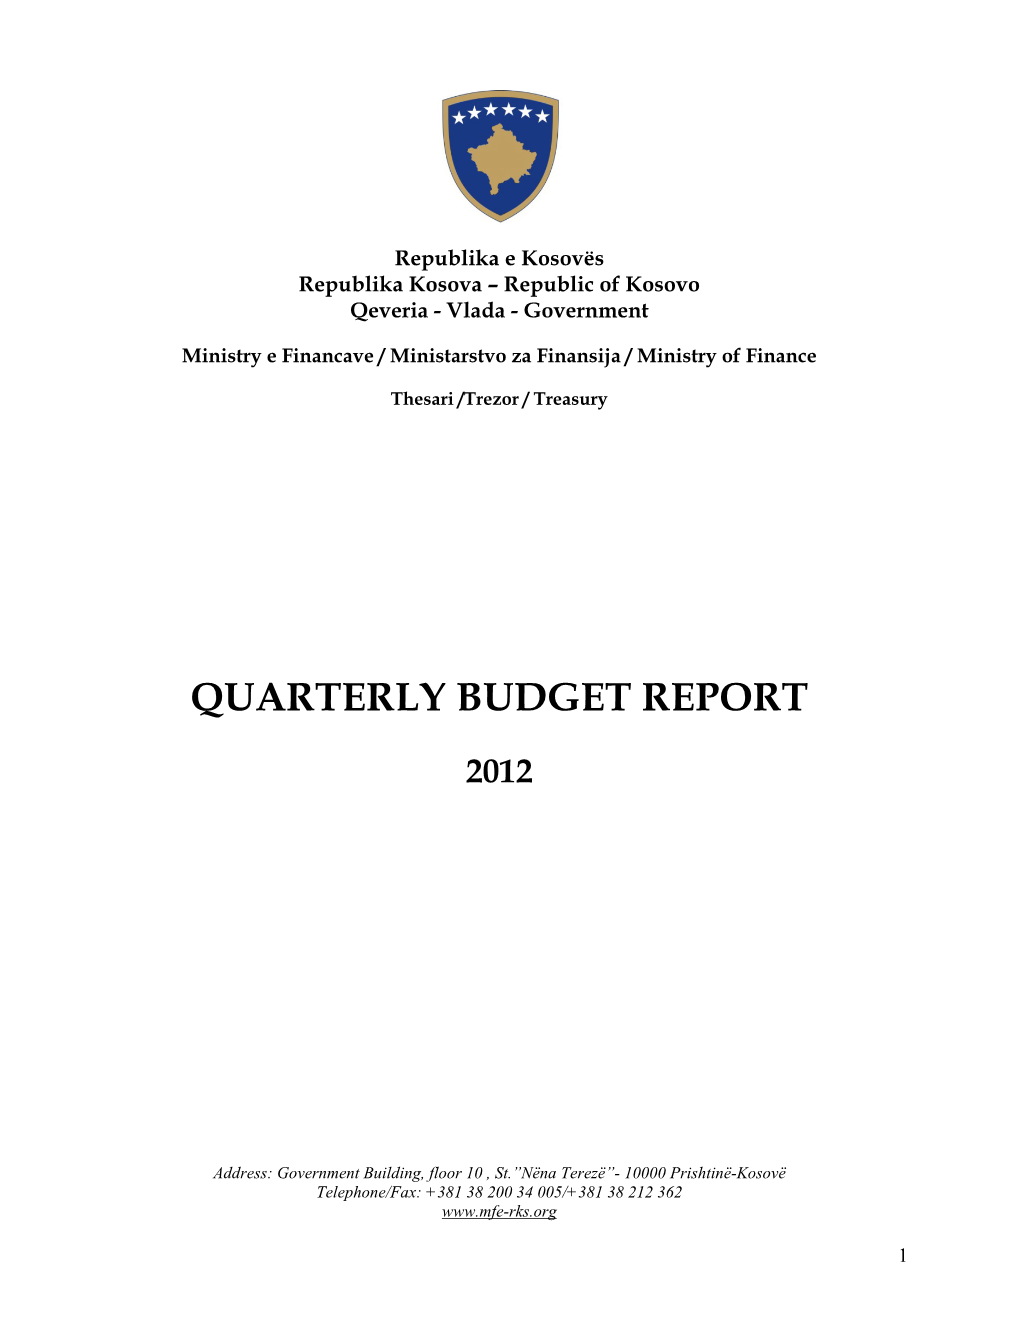 Quarterly Budget Report